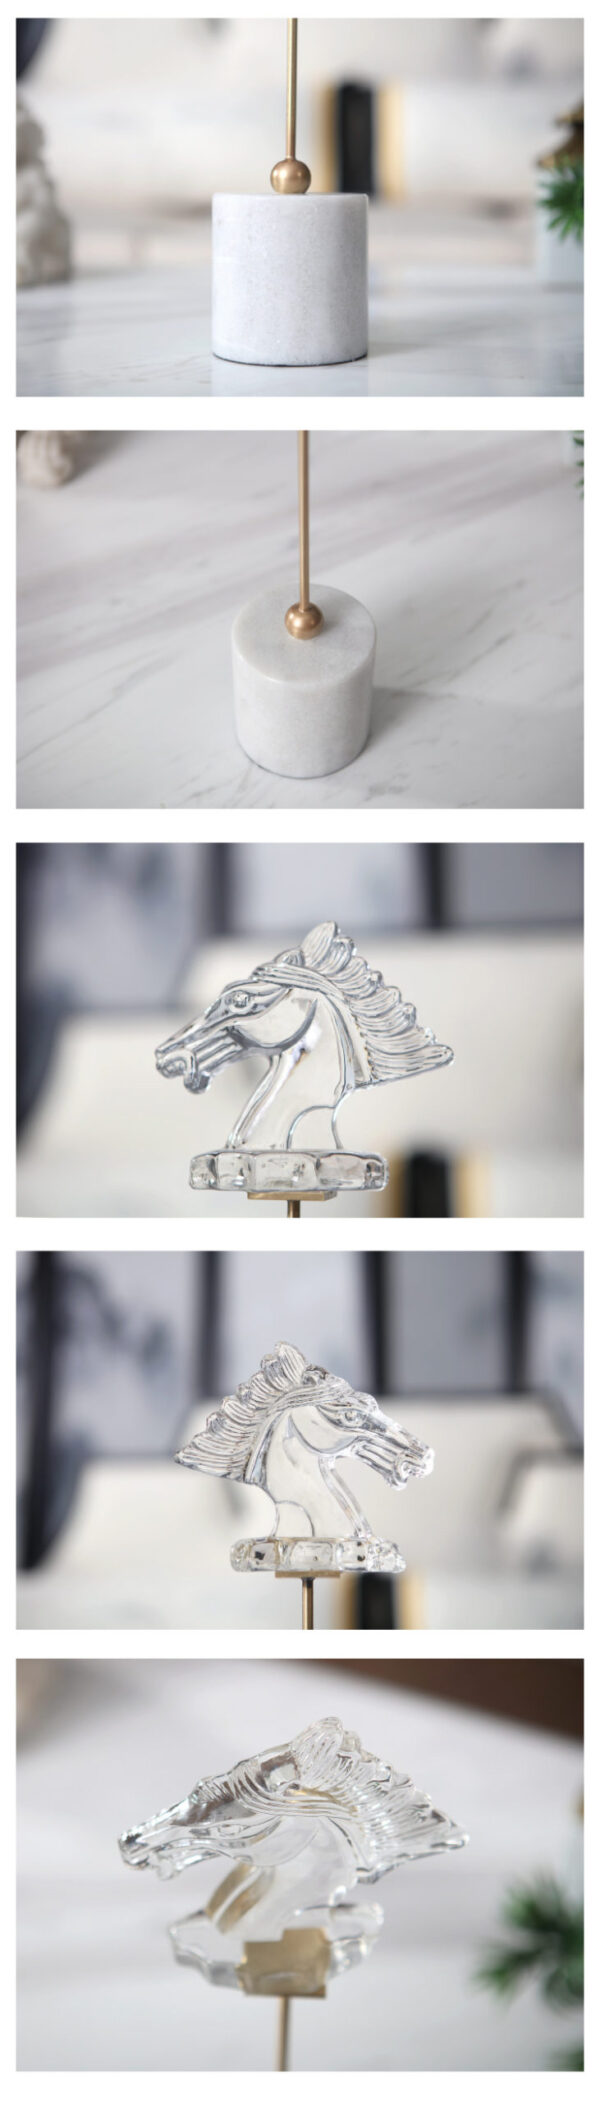 تمثال رأس الحصان العربي اكسسوارات منزلية